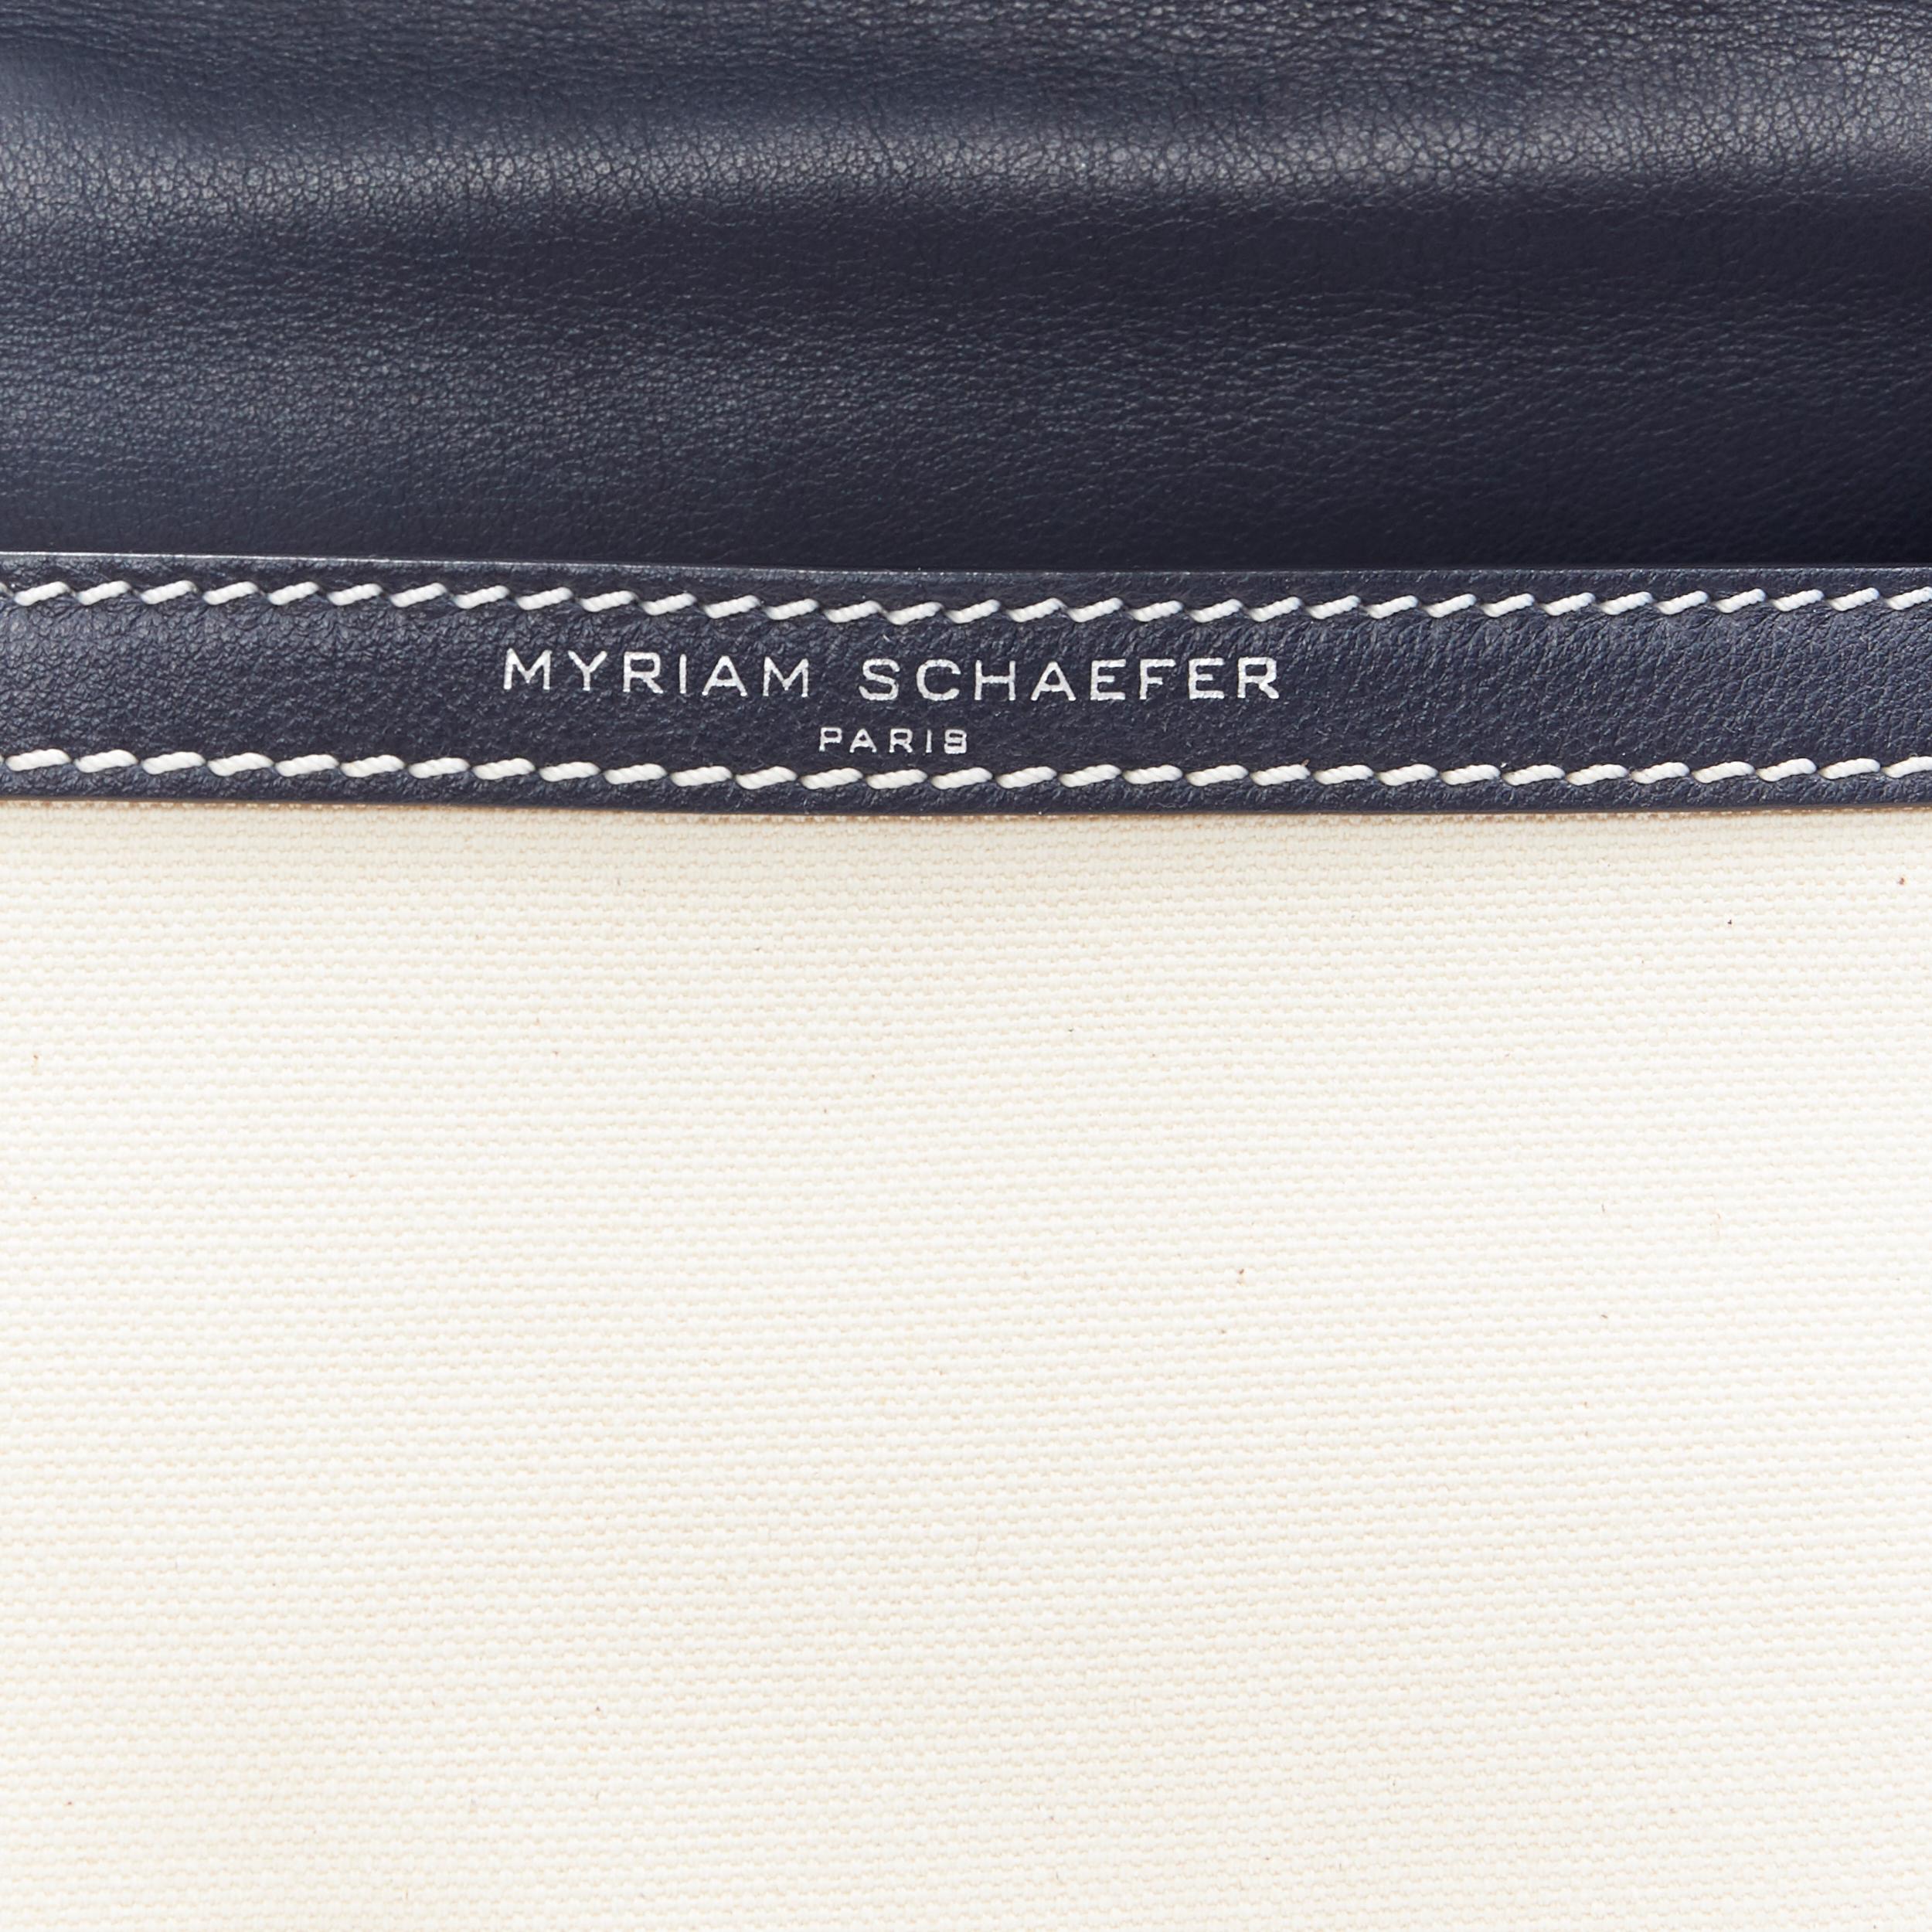 MYRIAM SCHAEFER Byron navy blue beige canvas top handle satchel shoulder bag 3